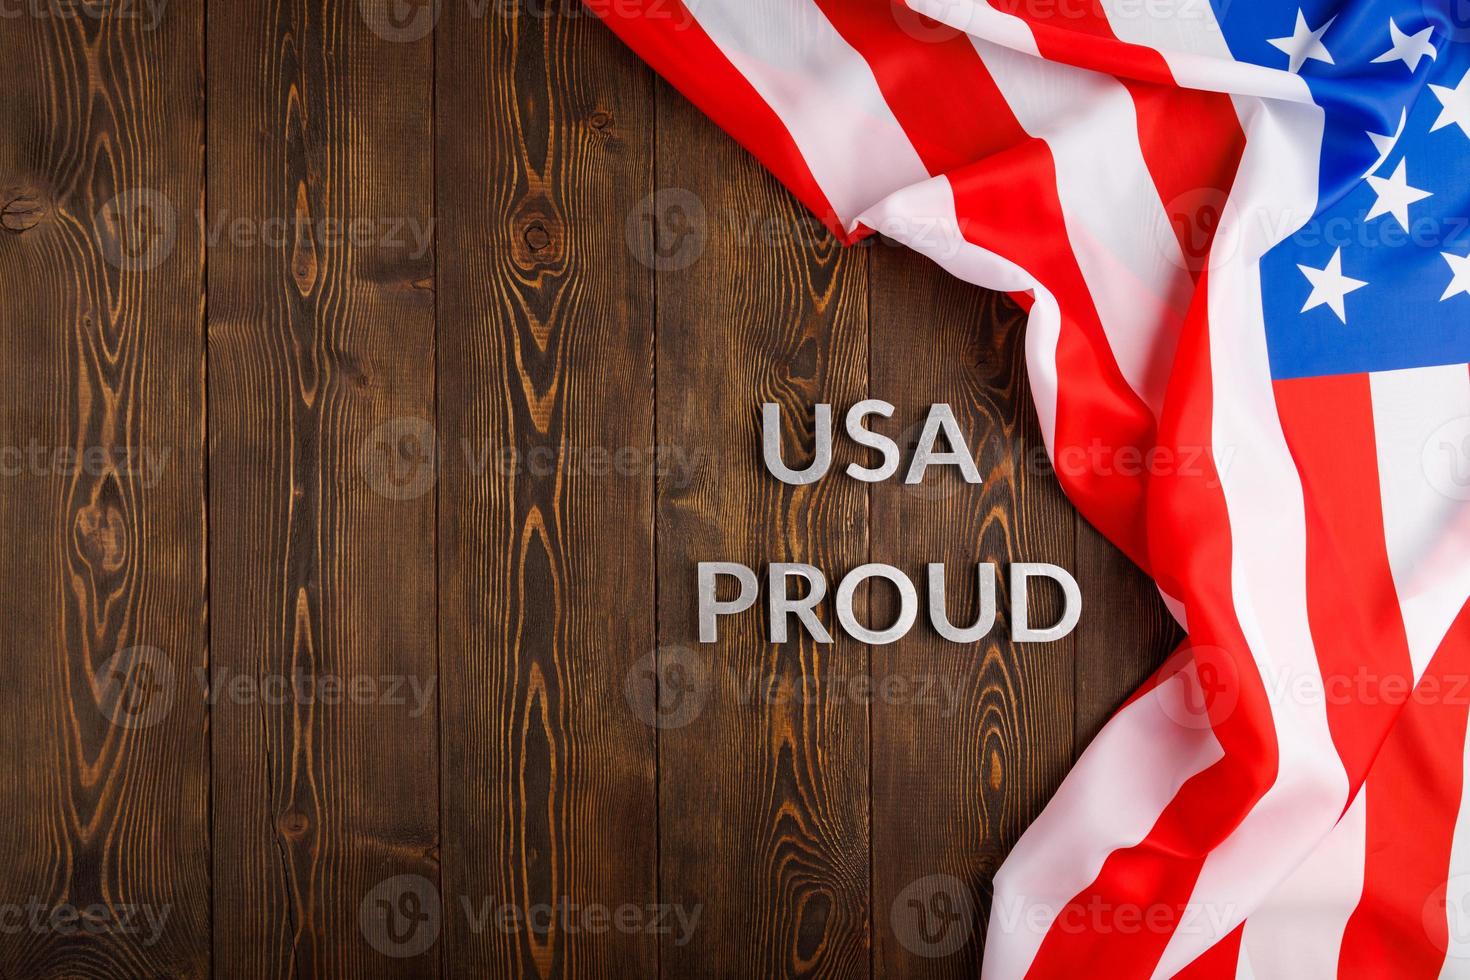 mots usa fiers posés avec des lettres en métal argenté sur une surface en bois marron avec le drapeau des états-unis d'amérique photo